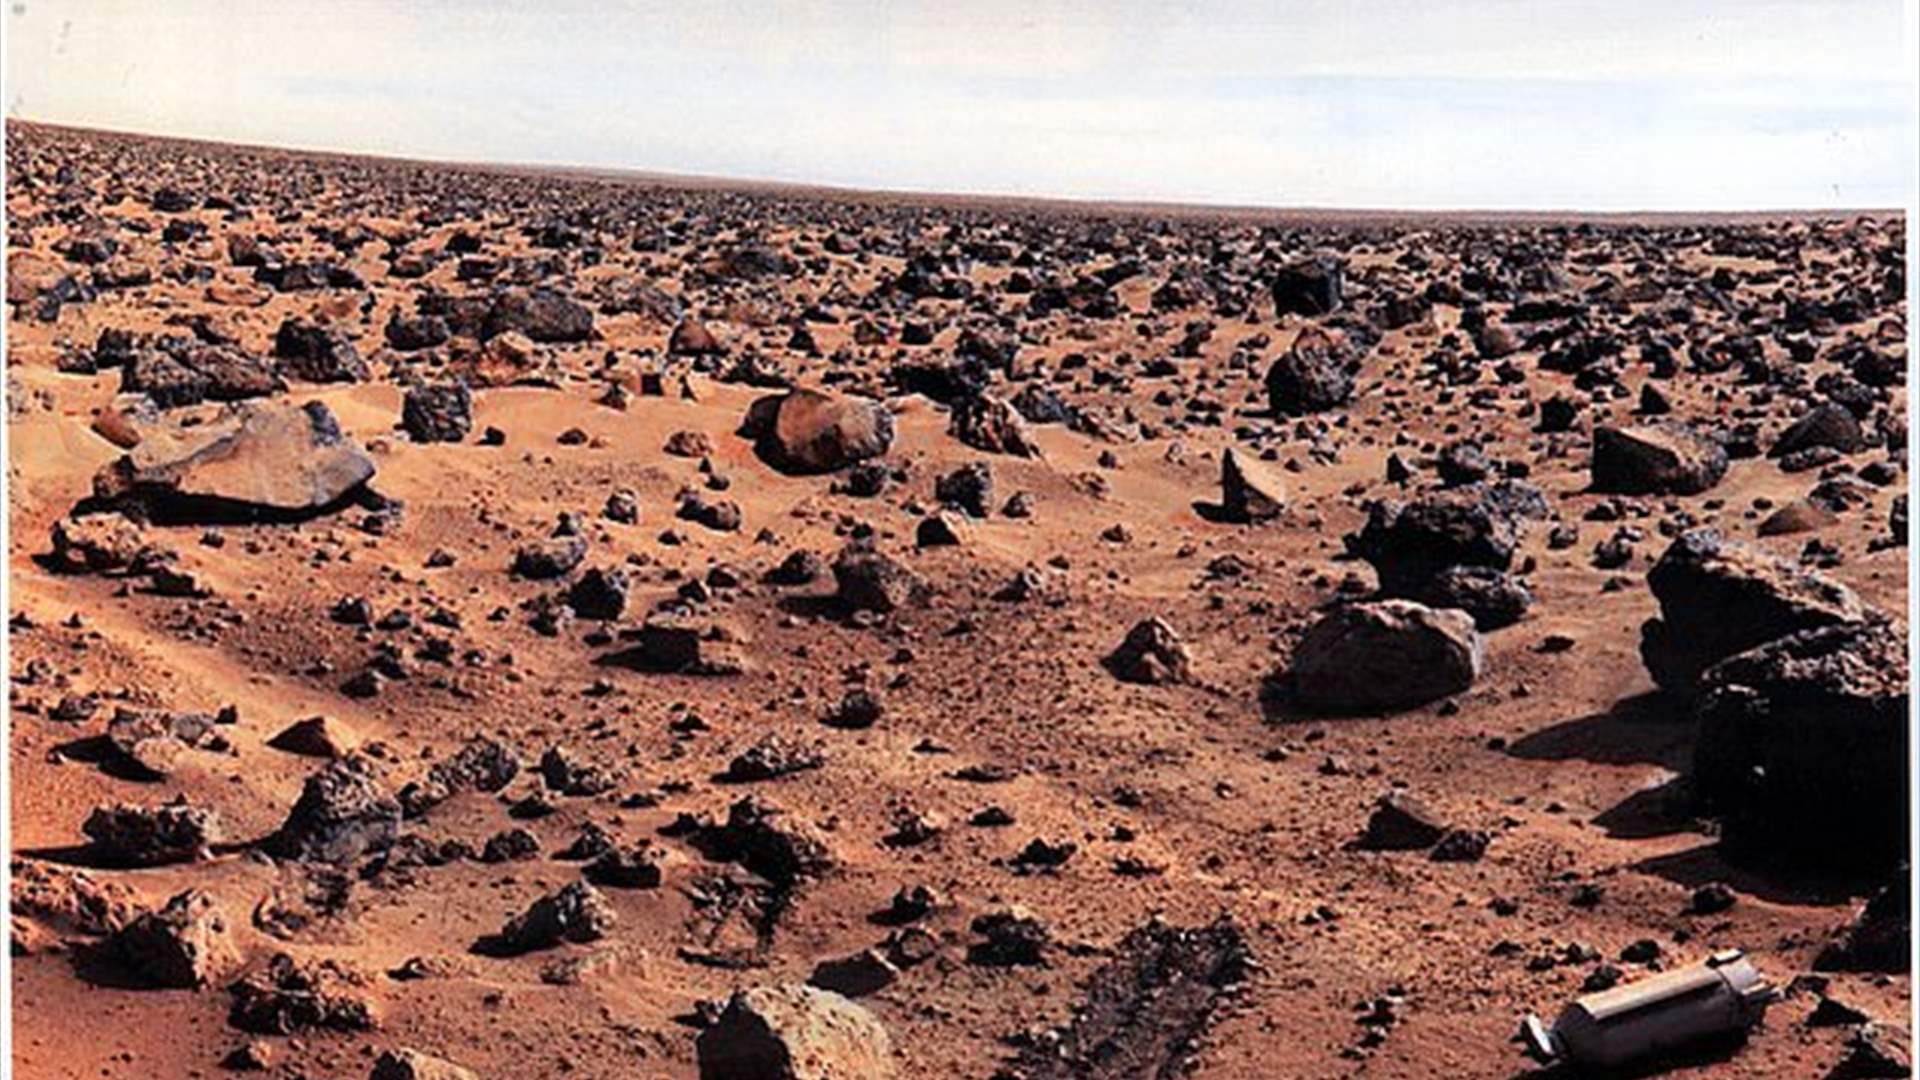 ناسا تقوم باكتشاف جديد... هل كان كوكب المريخ قابلا للسكن؟ (صورة)